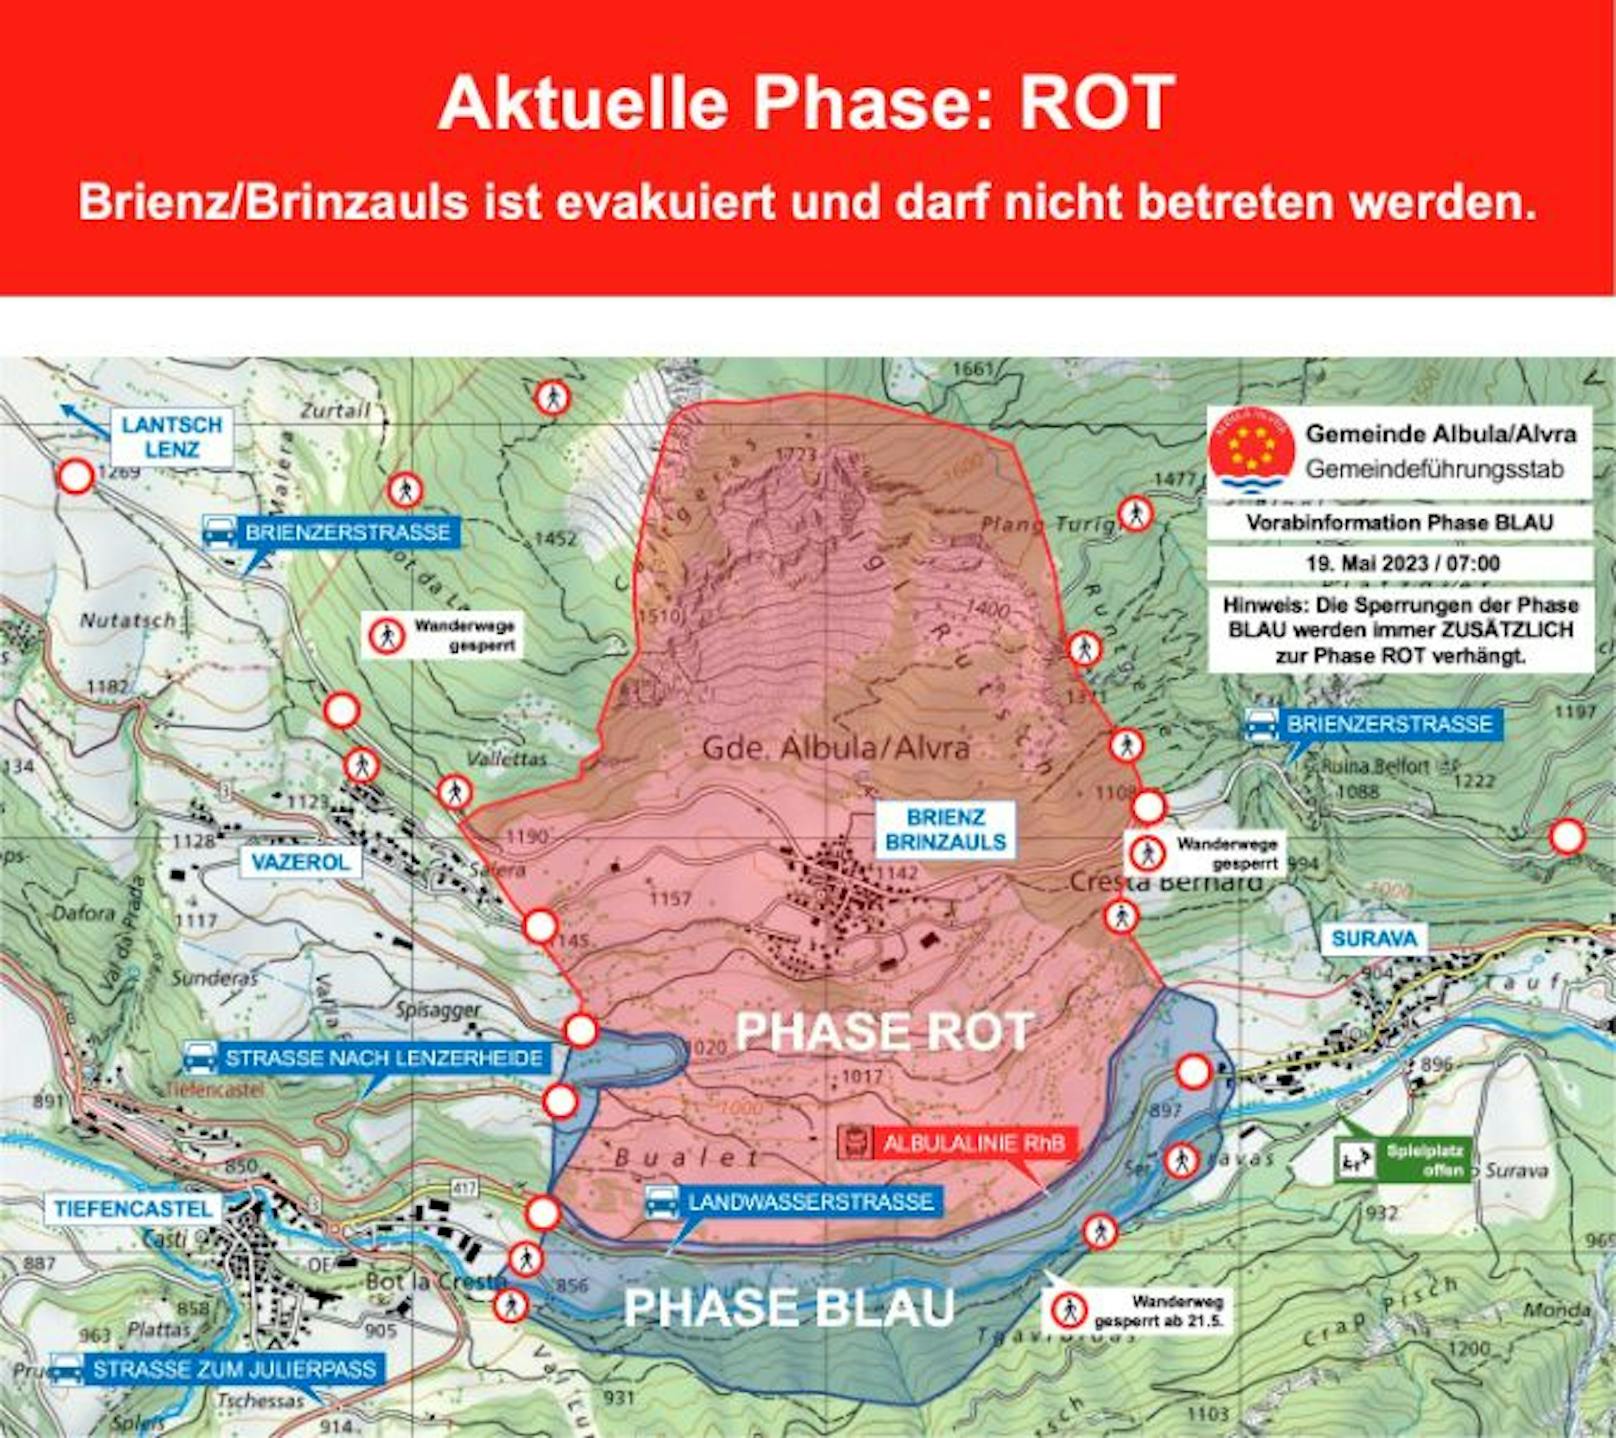 Rund einen Monat nach der Evakuierung gilt immer noch "Phase Rot" in Brienz.